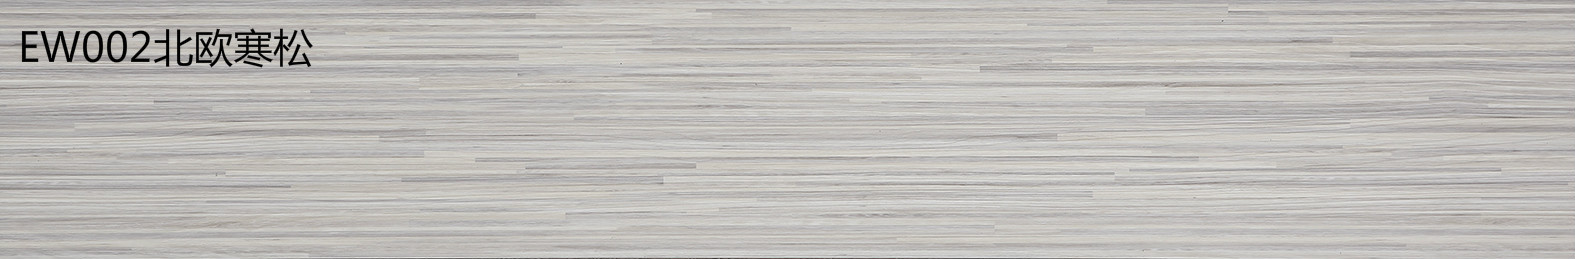 金鼠PVC地板木纹EW002